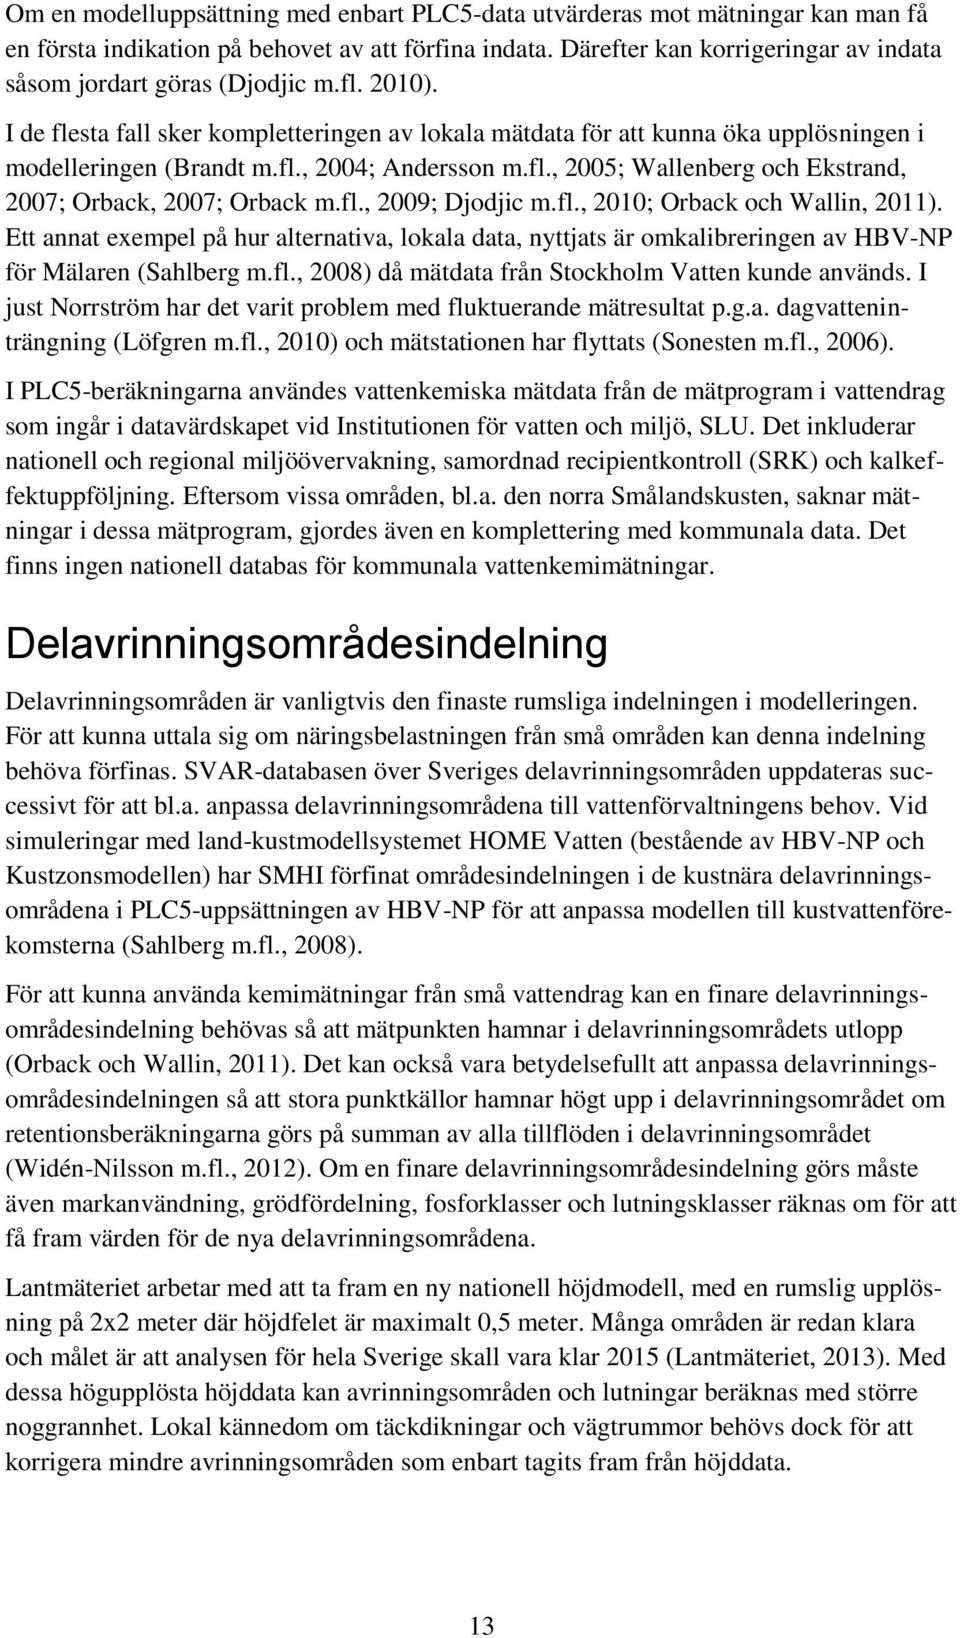 fl., 2005; Wallenberg och Ekstrand, 2007; Orback, 2007; Orback m.fl., 2009; Djodjic m.fl., 2010; Orback och Wallin, 2011).